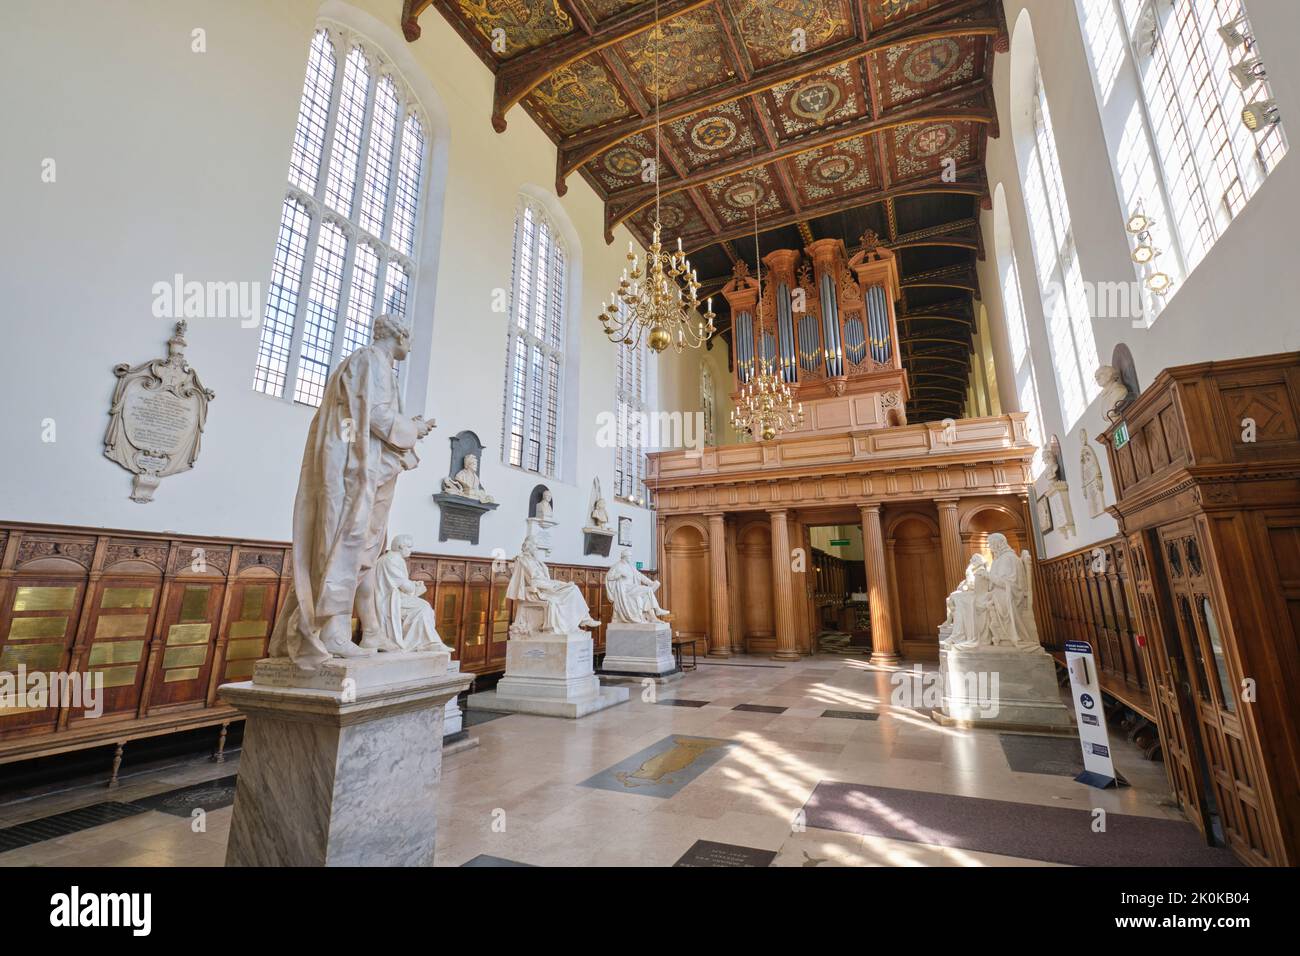 Vue intérieure de la chapelle de Trinity College avec statues en marbre de célèbres dirigeants anglais. À Cambridge, Angleterre, Royaume-Uni. Banque D'Images